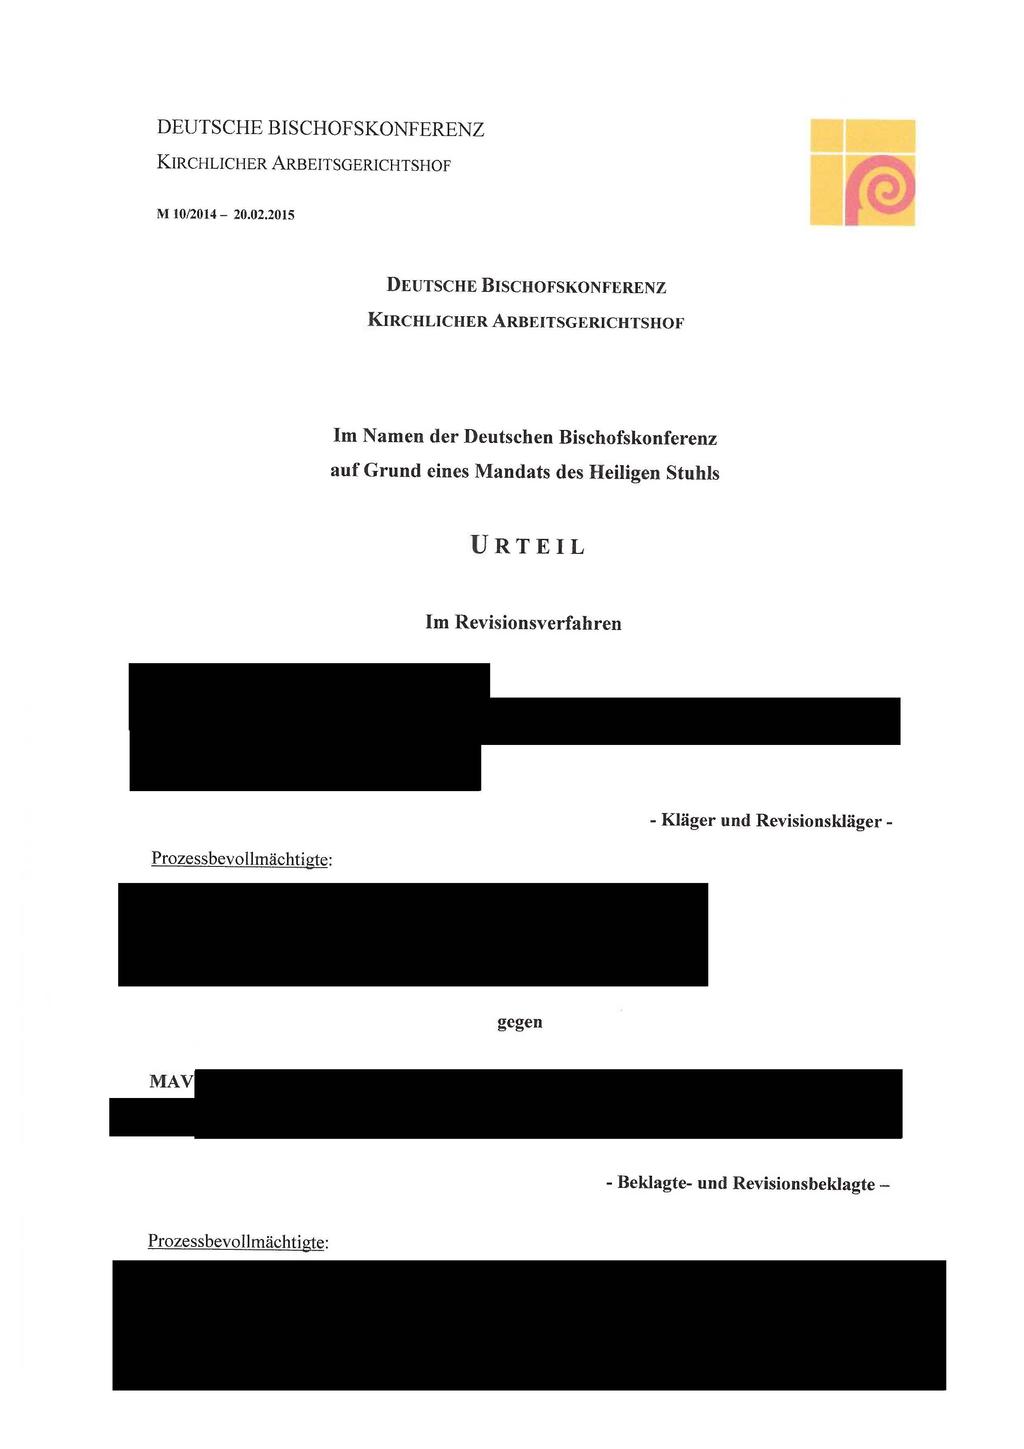 DEUTSCHE BISCHOFSKONFERENZ KIRCHLICHER ARBEITSGERICHTSHOF M 10/2014-20.02.